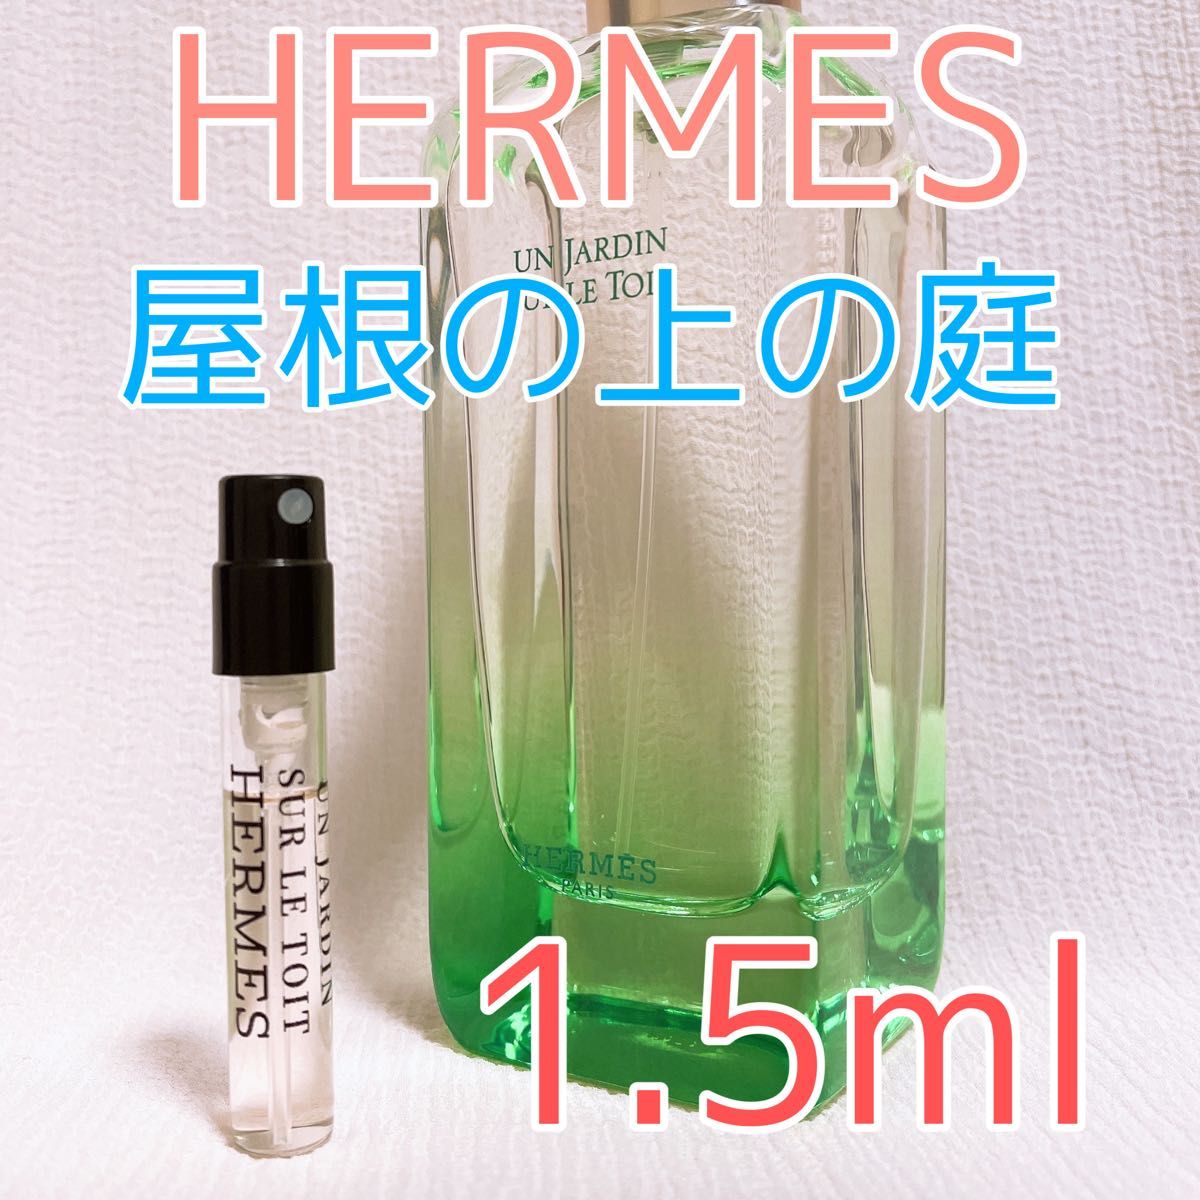 HERMES エルメス 屋根の上の庭 香水 1.5ml